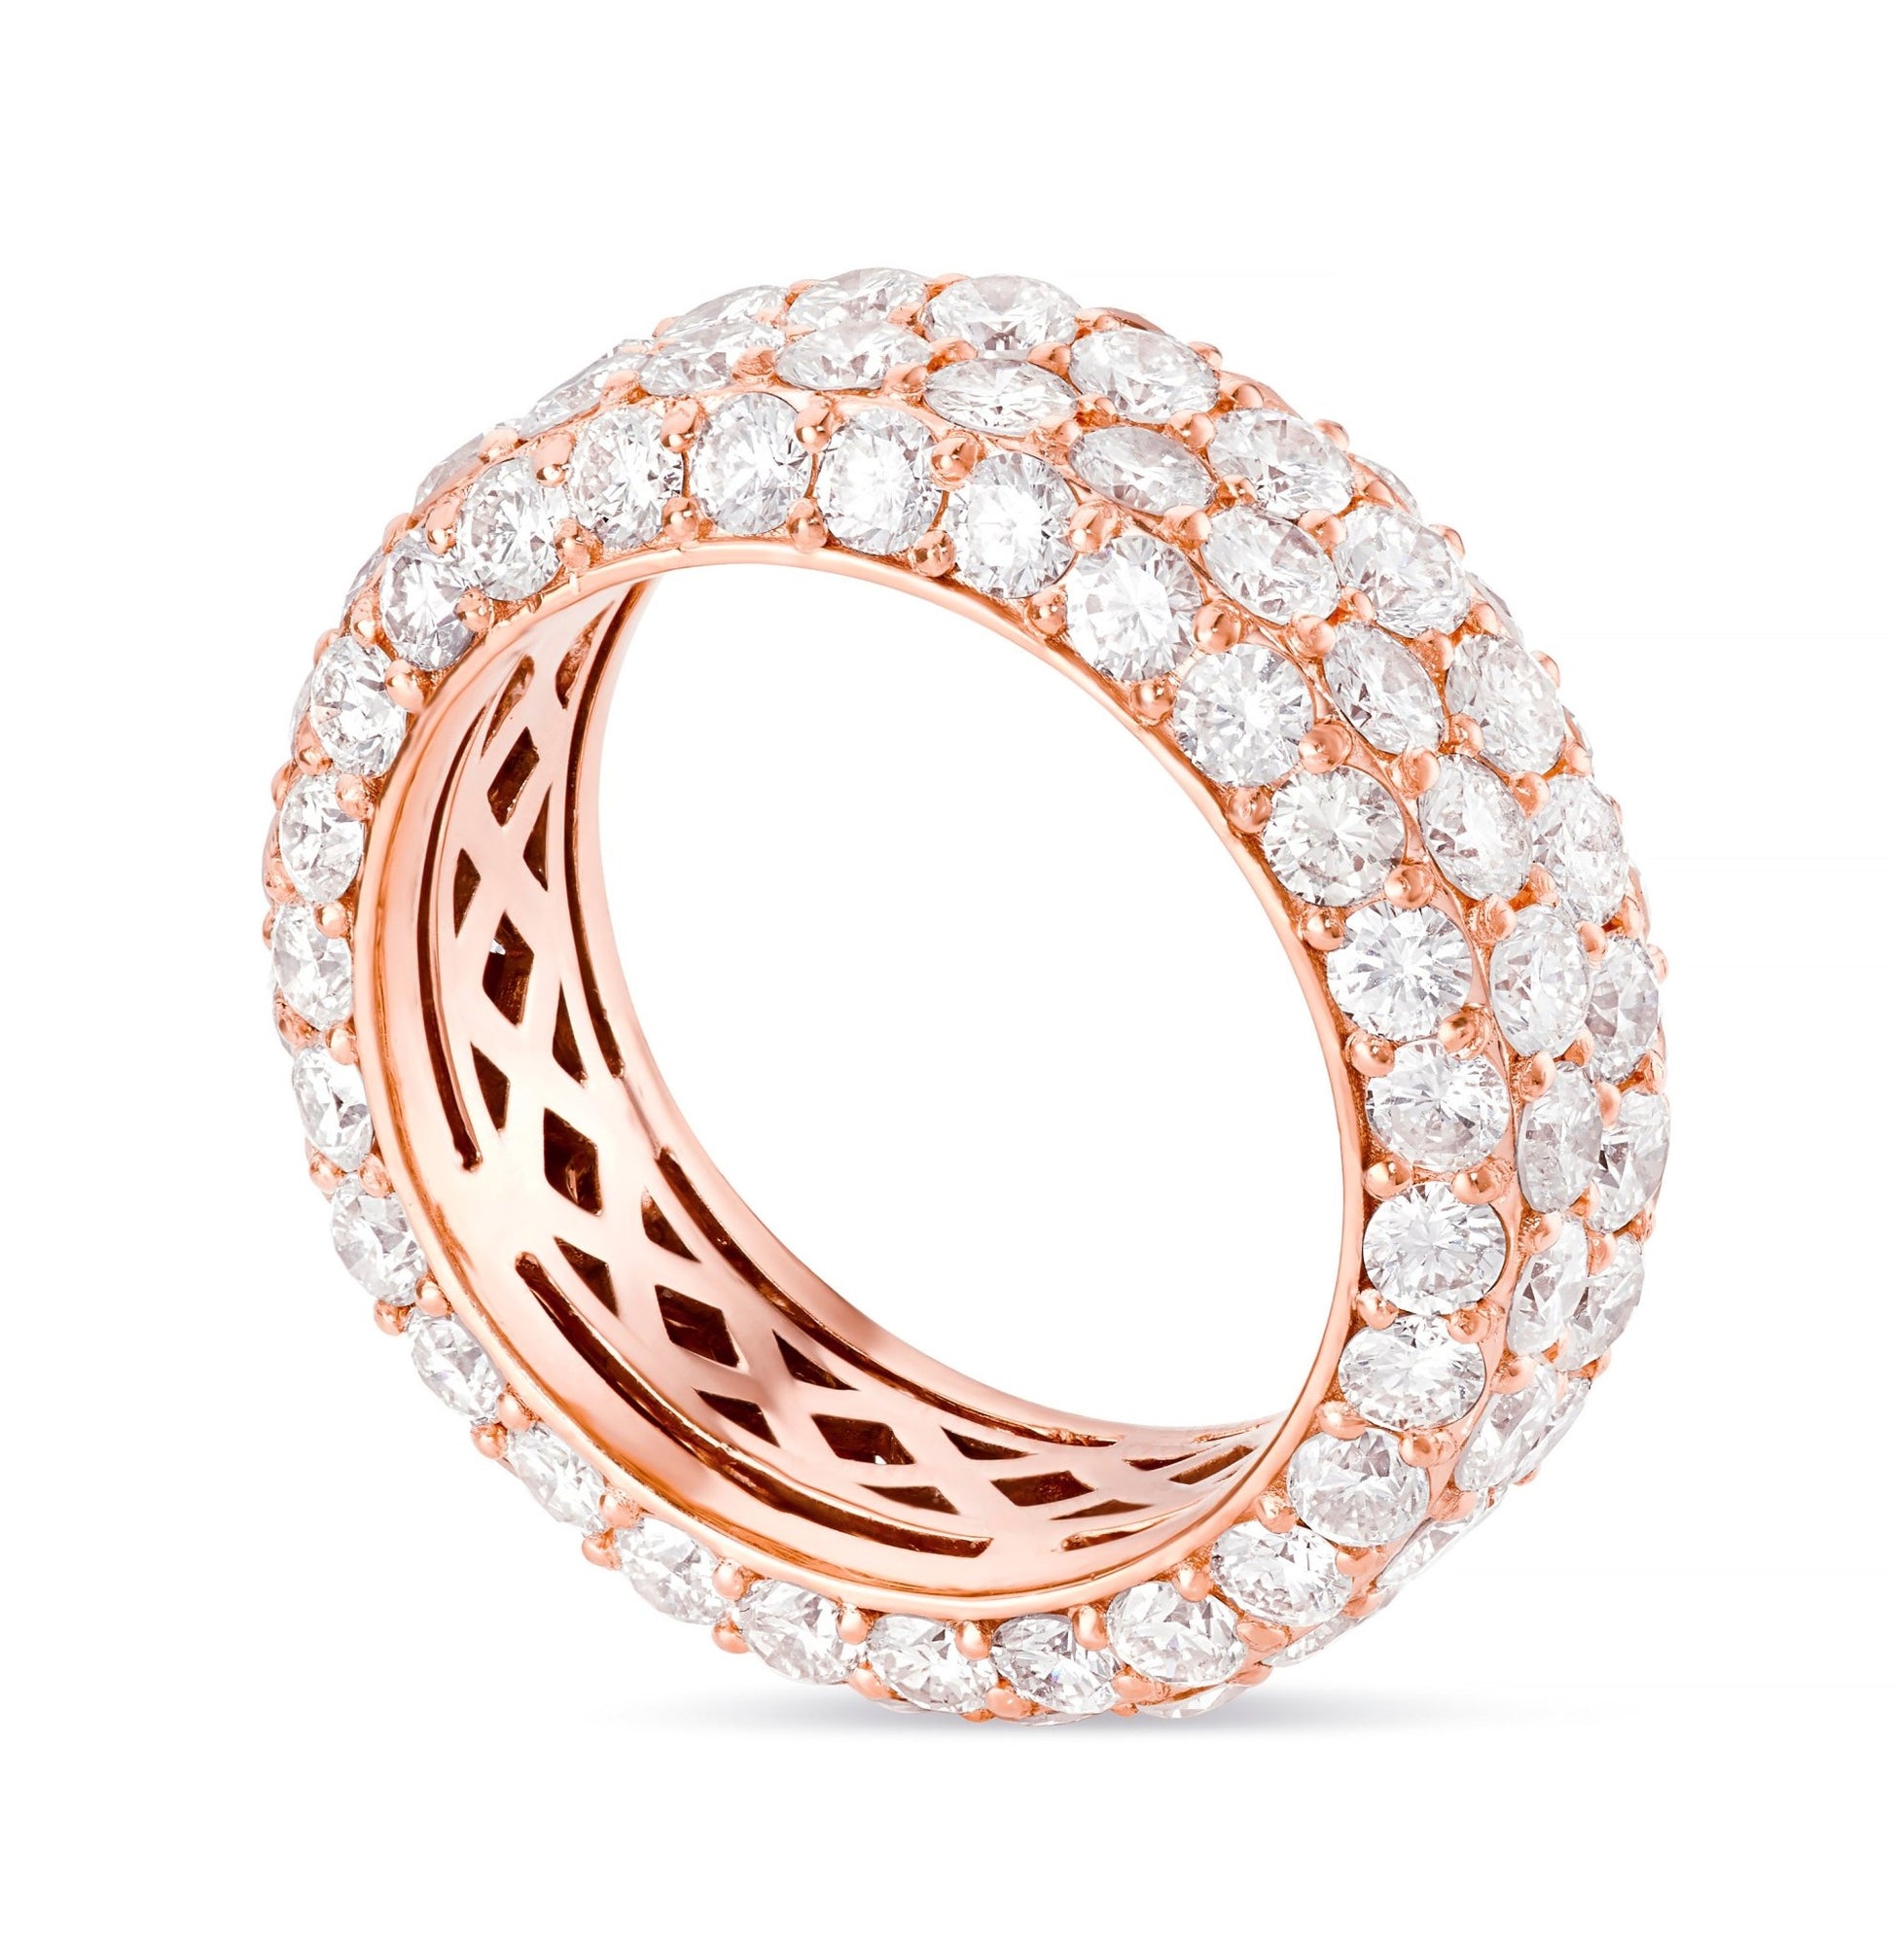 Four Row Diamond Eternity Ring - Shyne Jewelers 135-00068 Rose Gold Shyne Jewelers